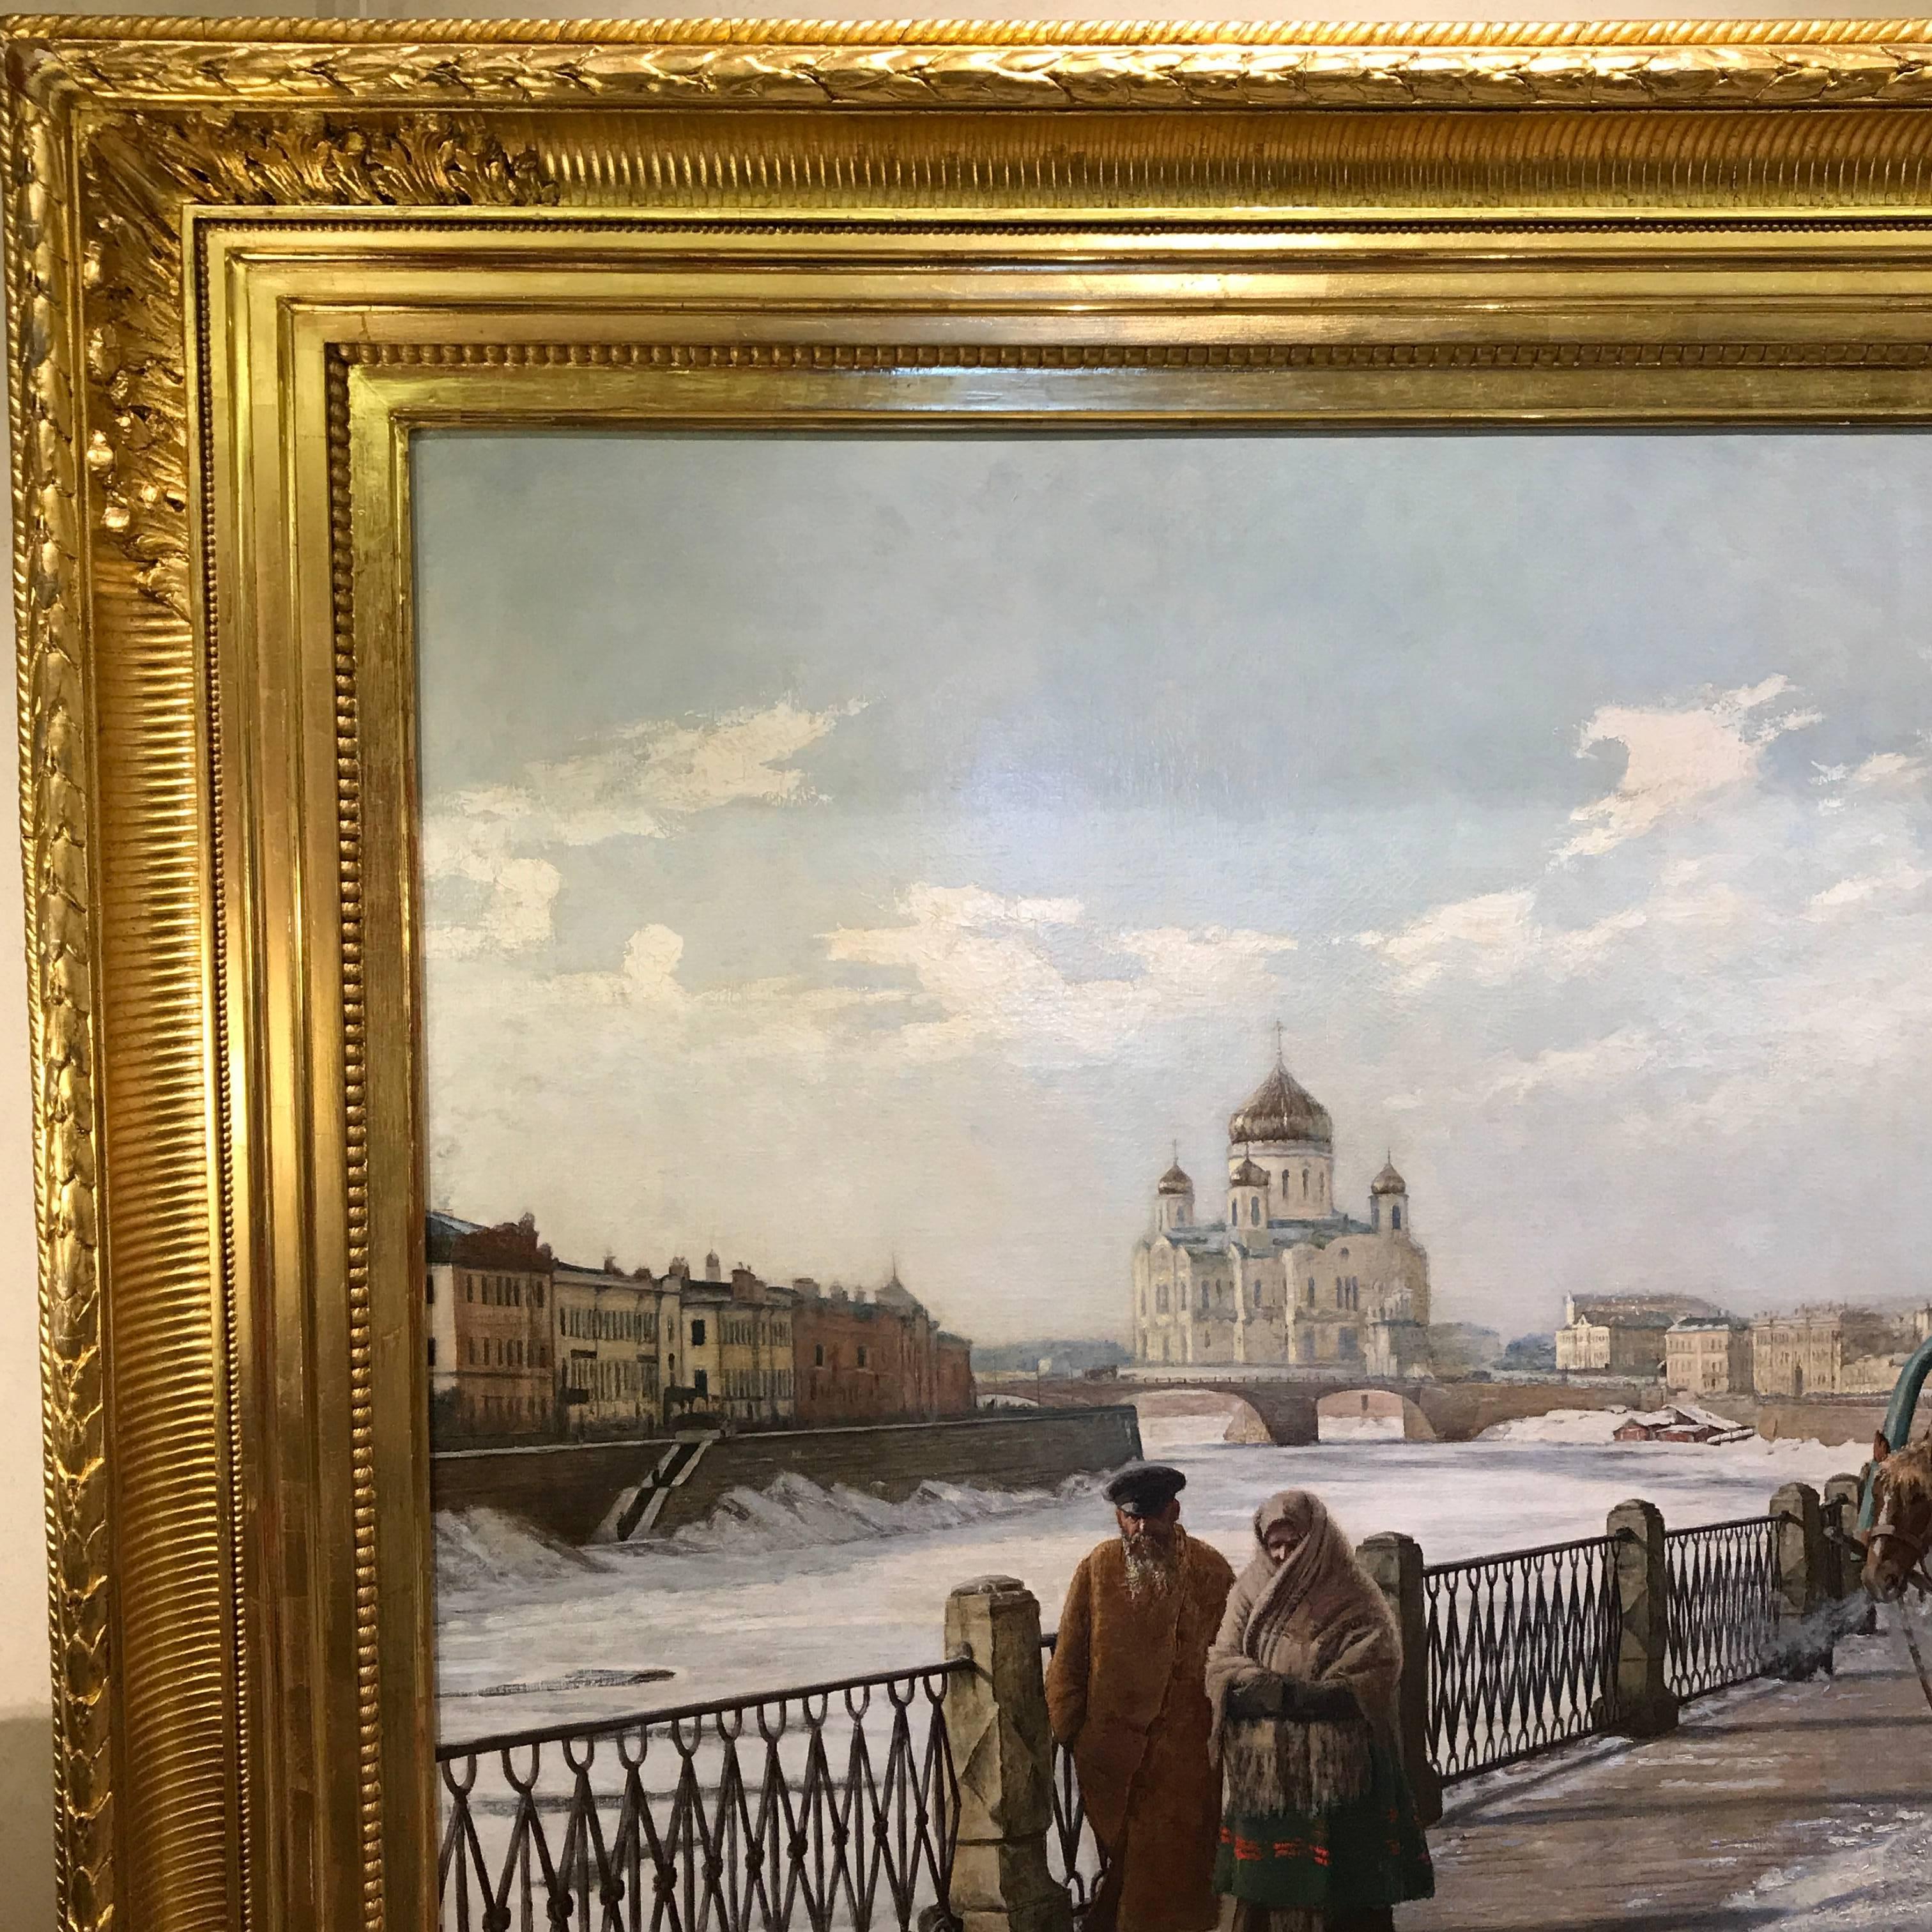 Moscou, sous la Neige, Moscou von Moscowa  (Grau), Landscape Painting, von Paul Louis Bouchard